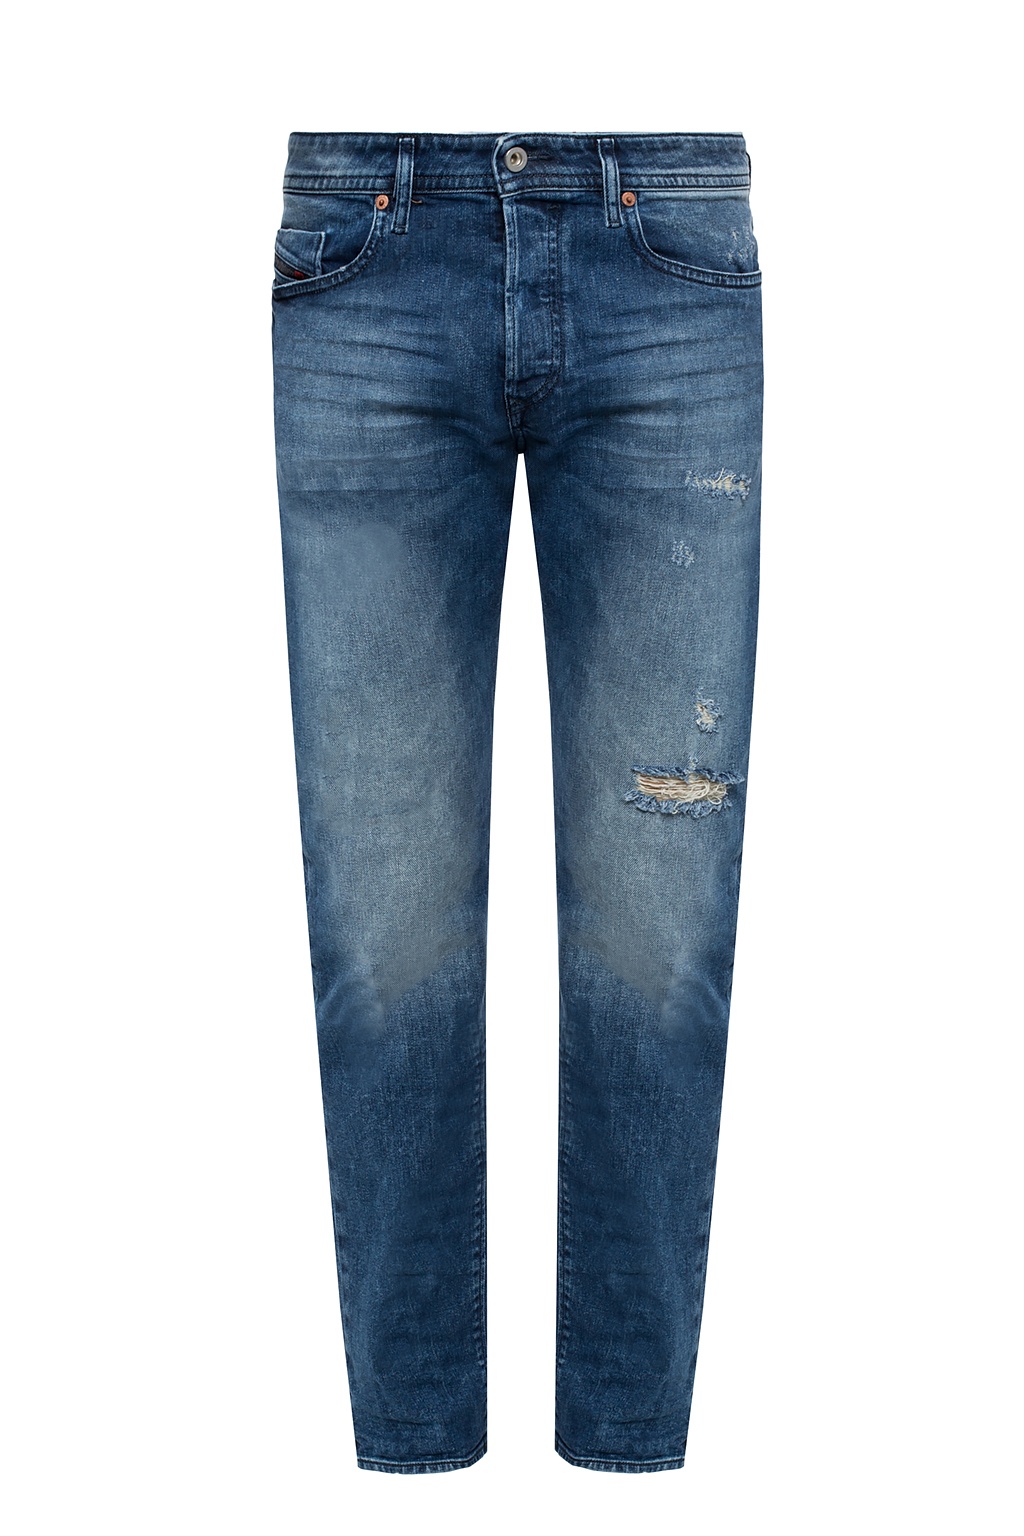 diesel buster jeans sale